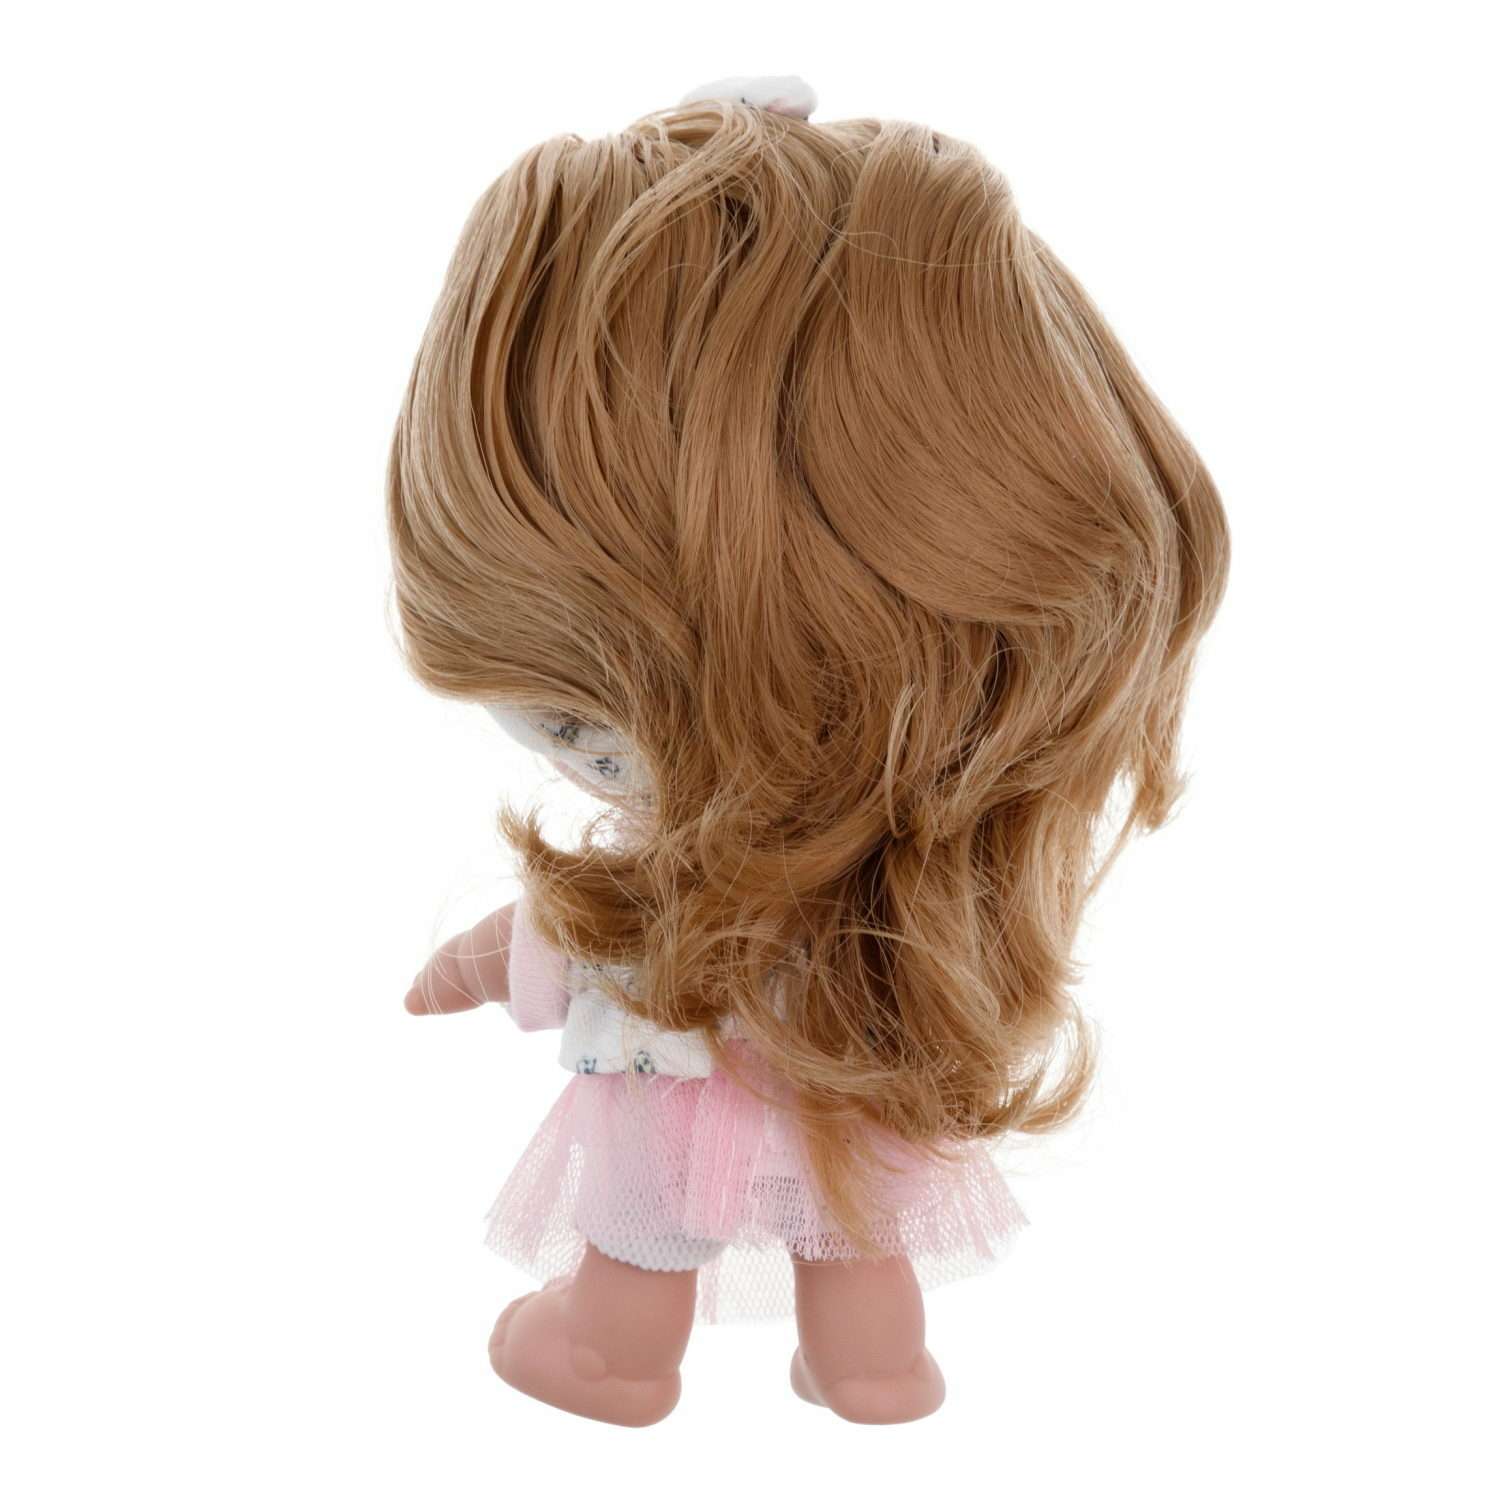 Кукла Arias elegance pequitas со светлыми волосами c cоской в розовом костюме 17 см Т19780-6 - фото 4